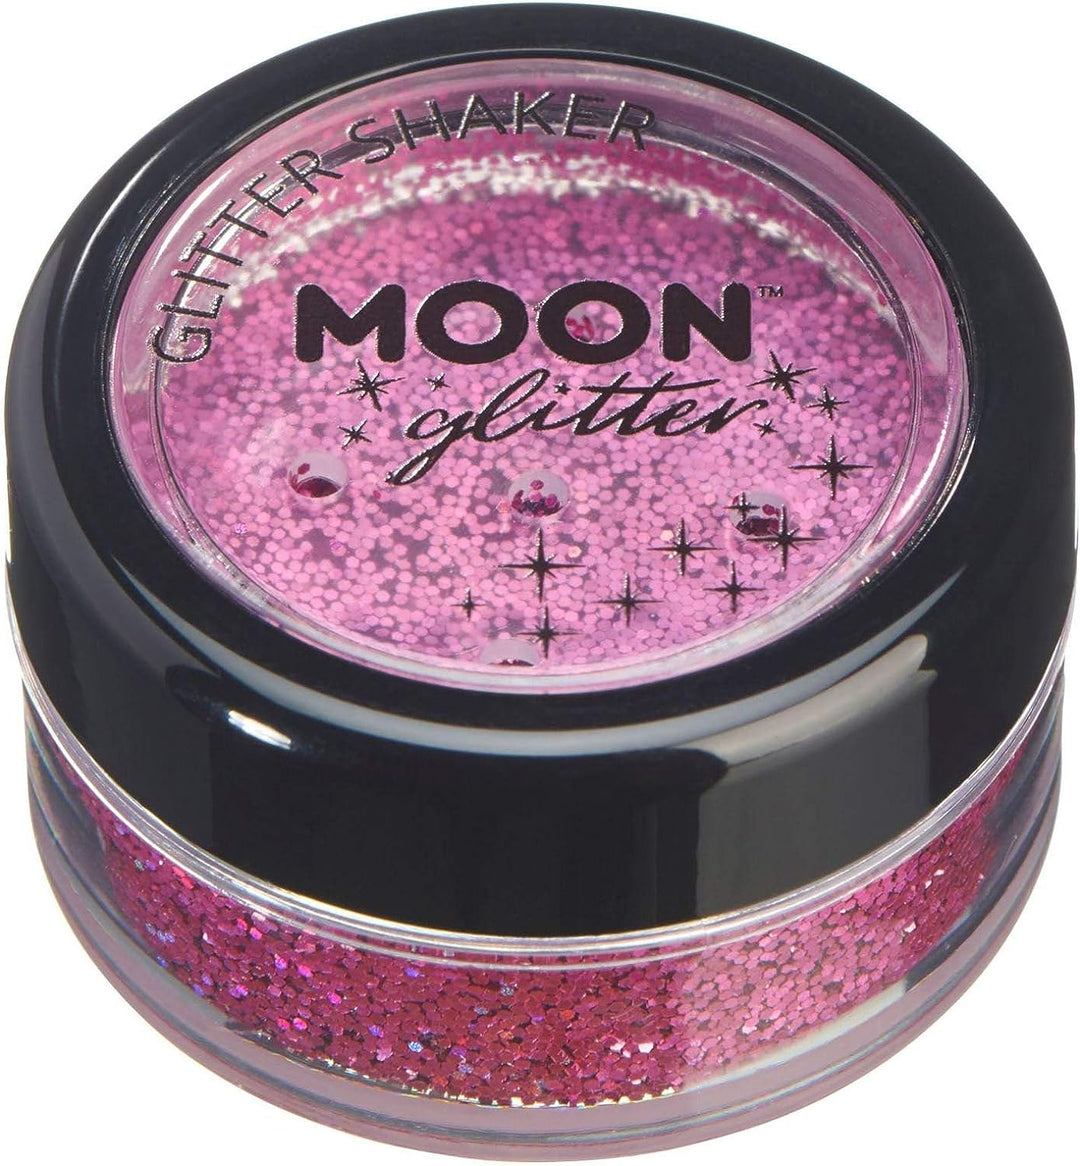 Holografische Glitzerstreuer von Moon Glitter – Pink – kosmetischer Festival-Make-up-Glitzer für Gesicht, Körper, Nägel, Haare, Lippen – 5 g